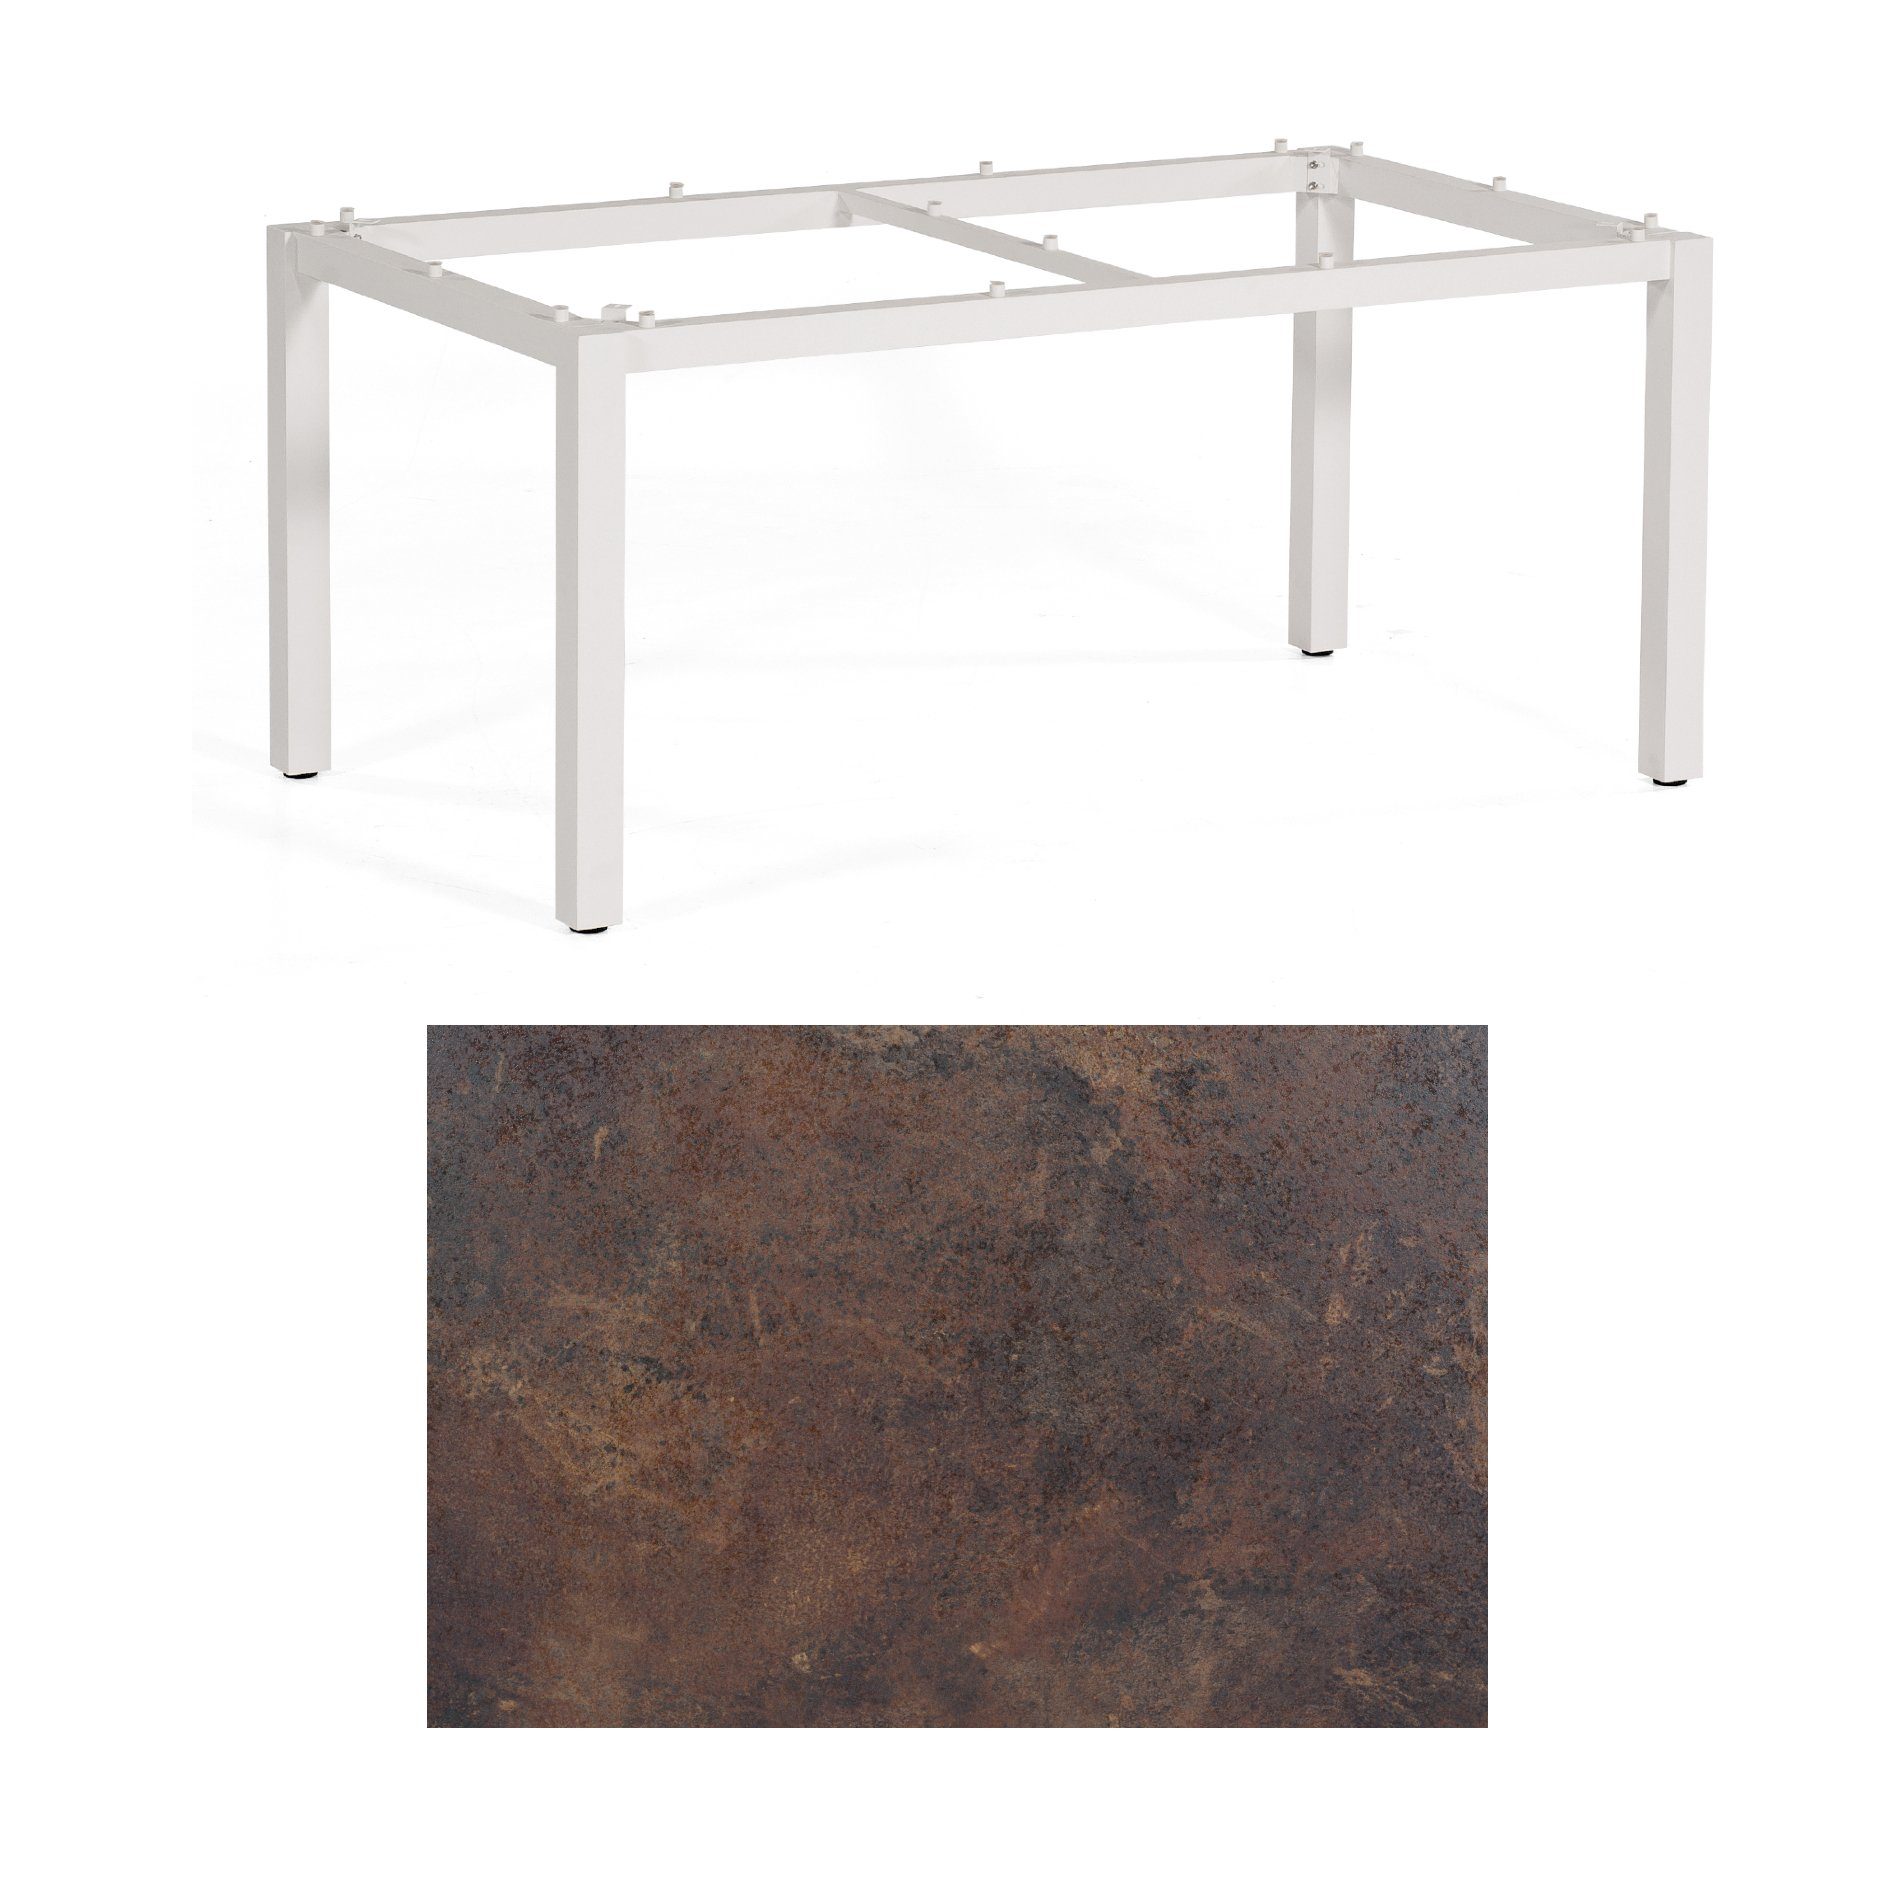 SonnenPartner Tisch „Base“, Gestell Aluminium weiß, Tischplatte HPL Rostoptik, 160x90 cm